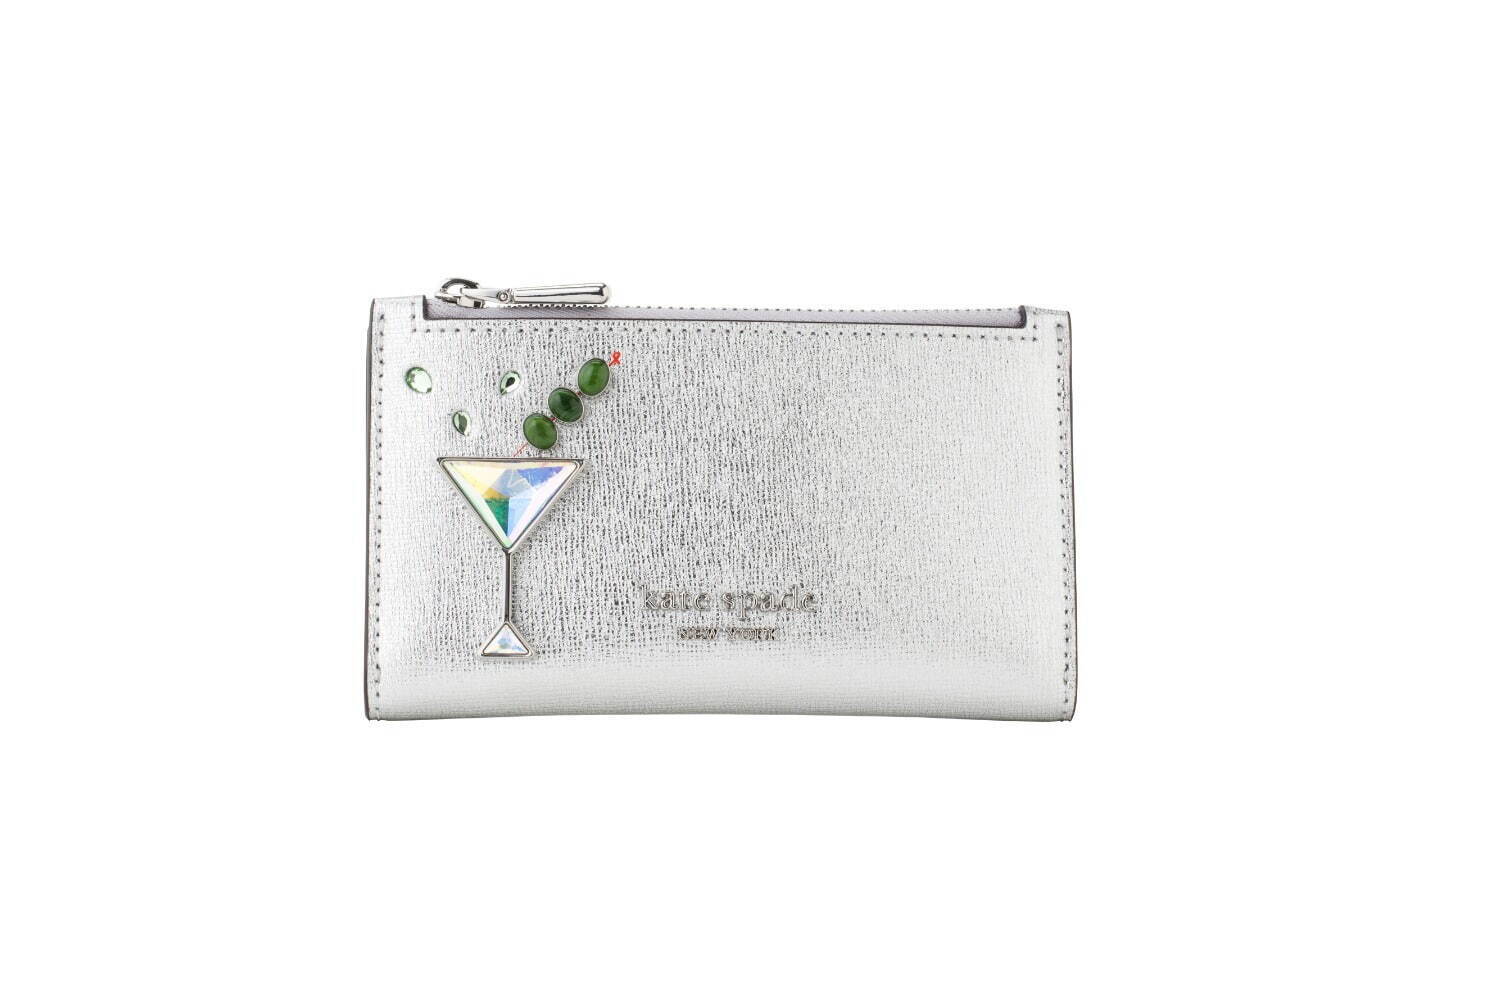 shaken not stirred embellished metallic small slim bifold wallet 26,400円
※9月上旬発売予定